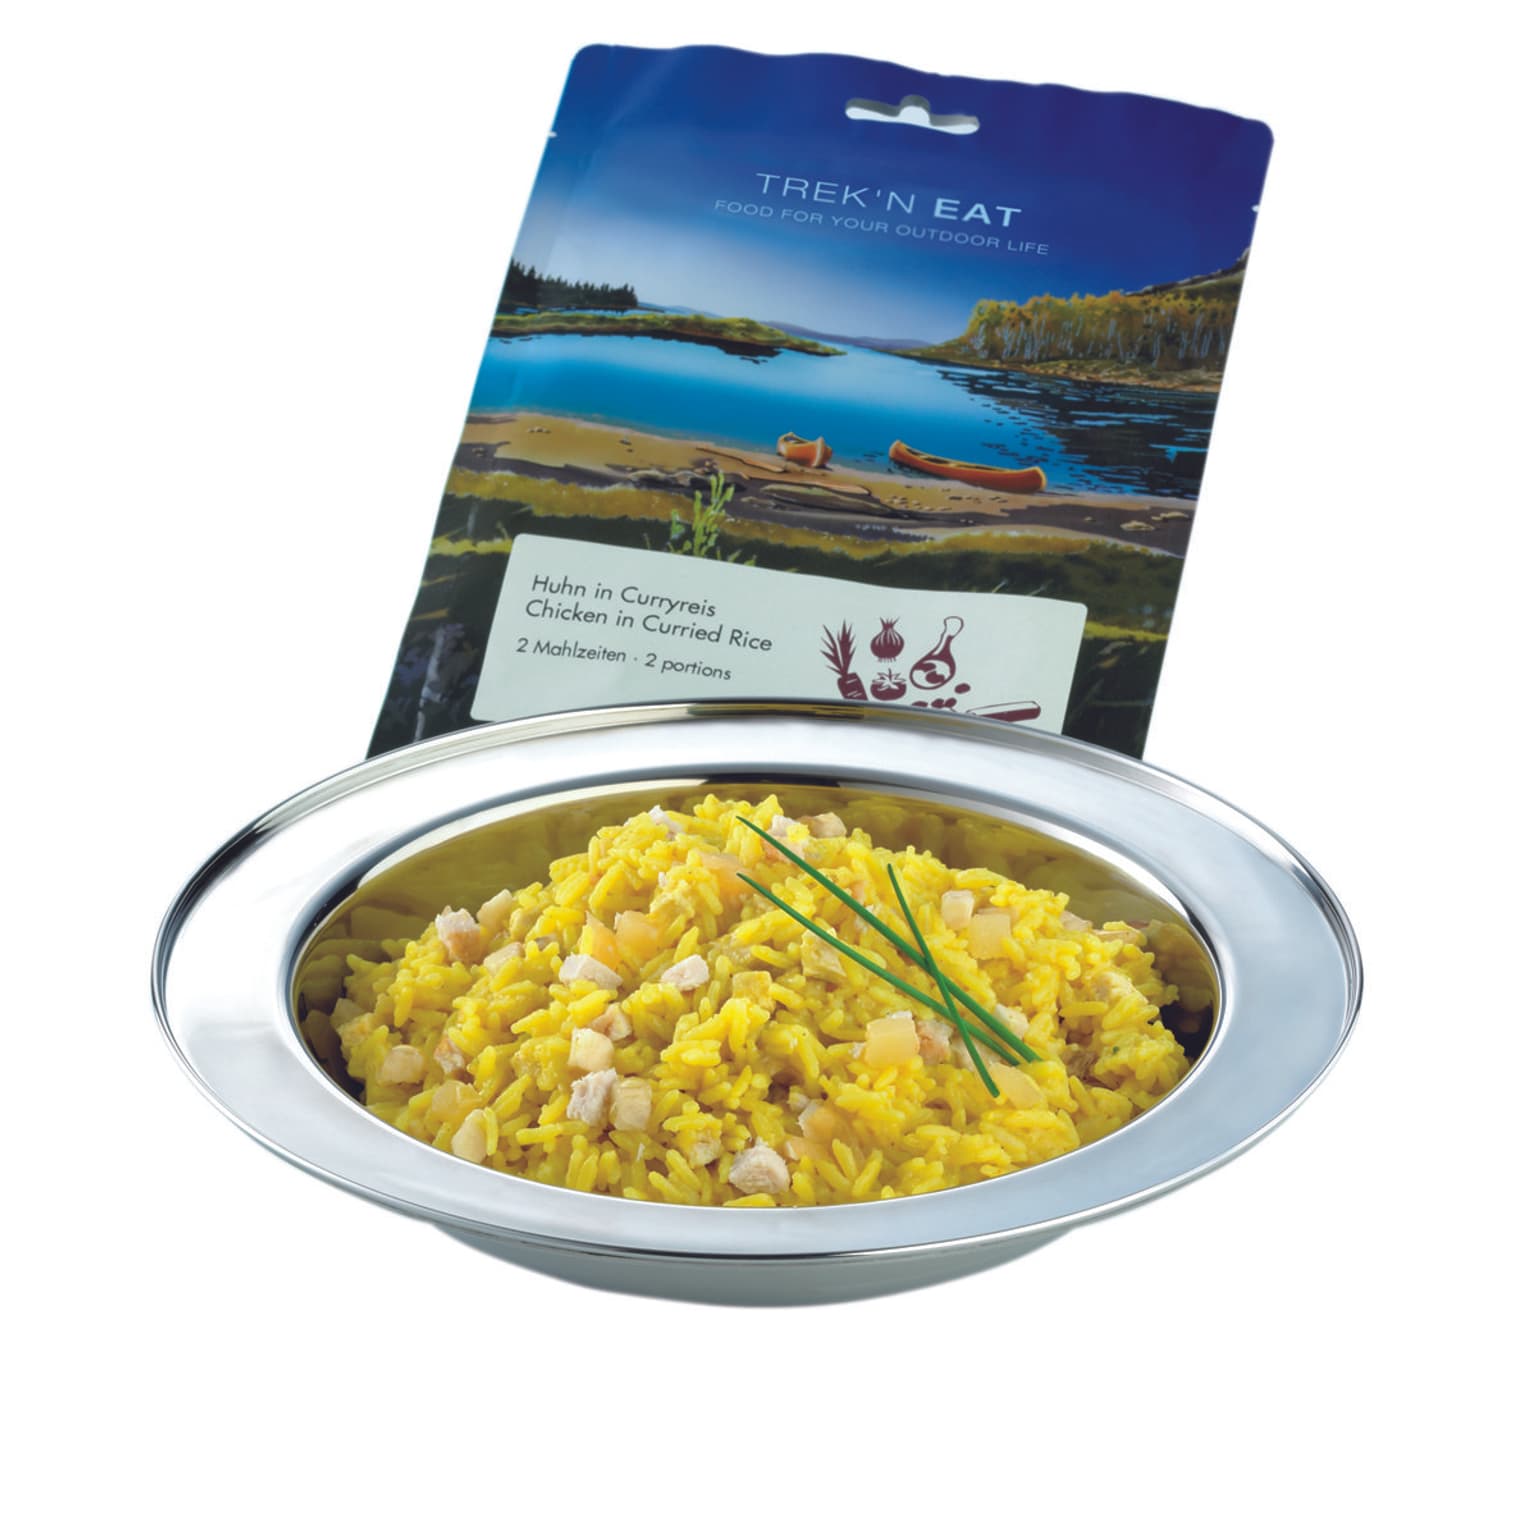 Trek'n Eat Trek'n Eat Huhn in Curryreis Trekkingfood 1